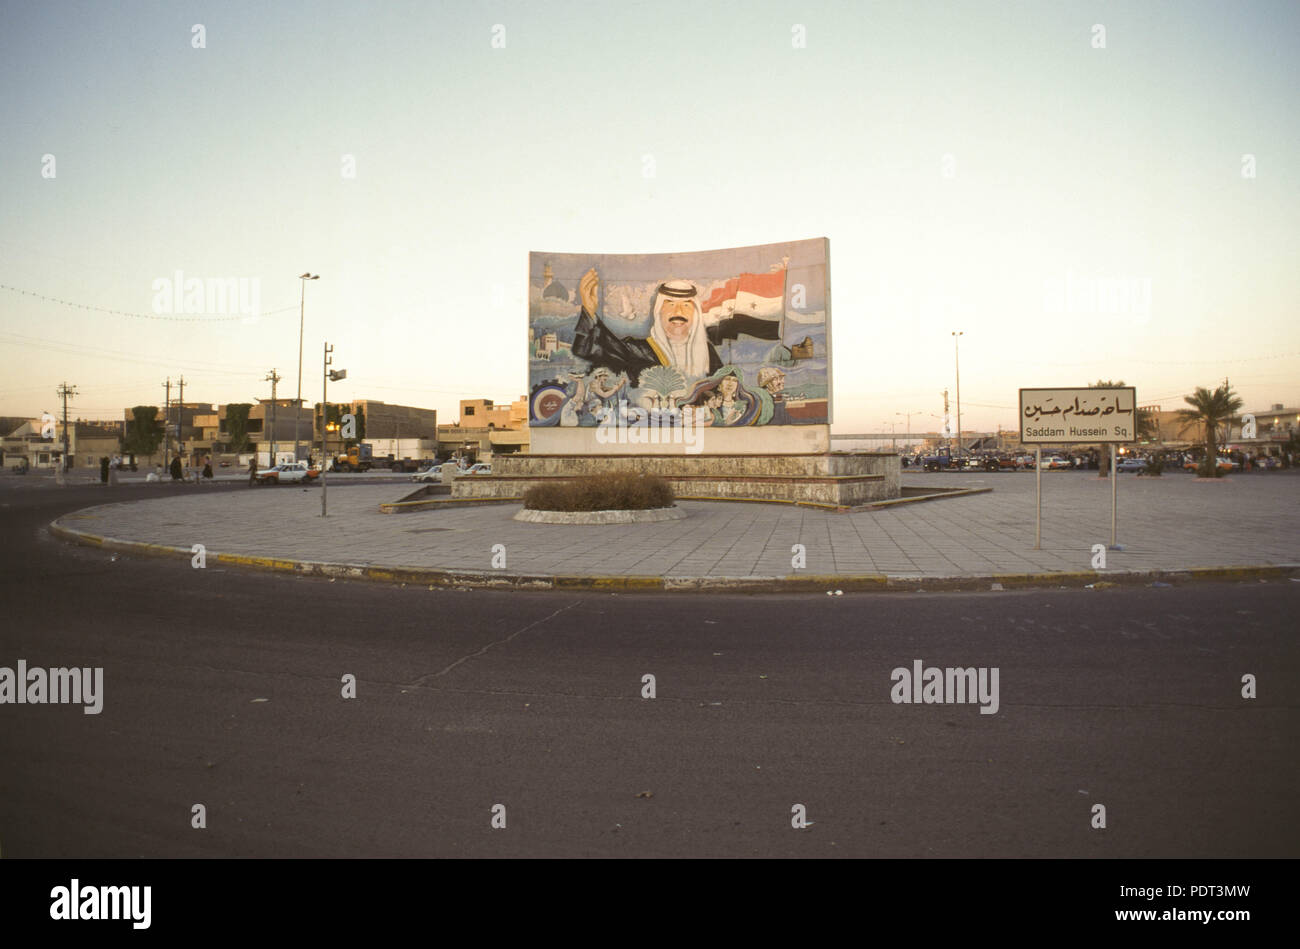 Ein wandbild von strongman Präsident Saddam Hussein in 1995, Saddam Hussein Square, Bagdad. Stockfoto